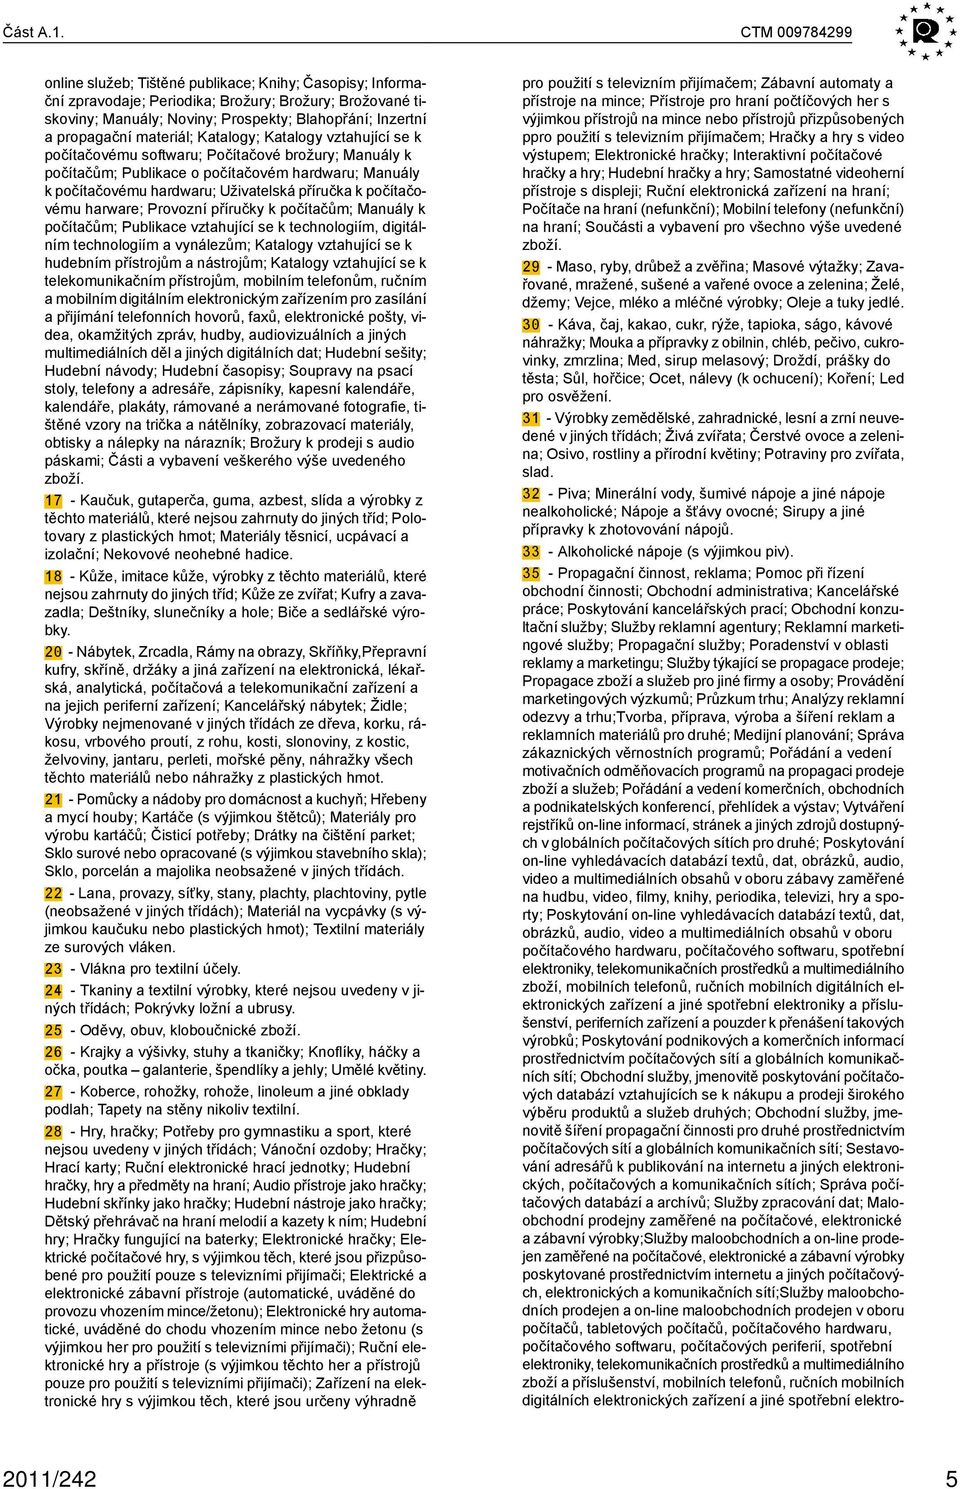 materiál; Katalogy; Katalogy vztahující se k počítačovému softwaru; Počítačové brožury; Manuály k počítačům; Publikace o počítačovém hardwaru; Manuály k počítačovému hardwaru; Uživatelská příručka k